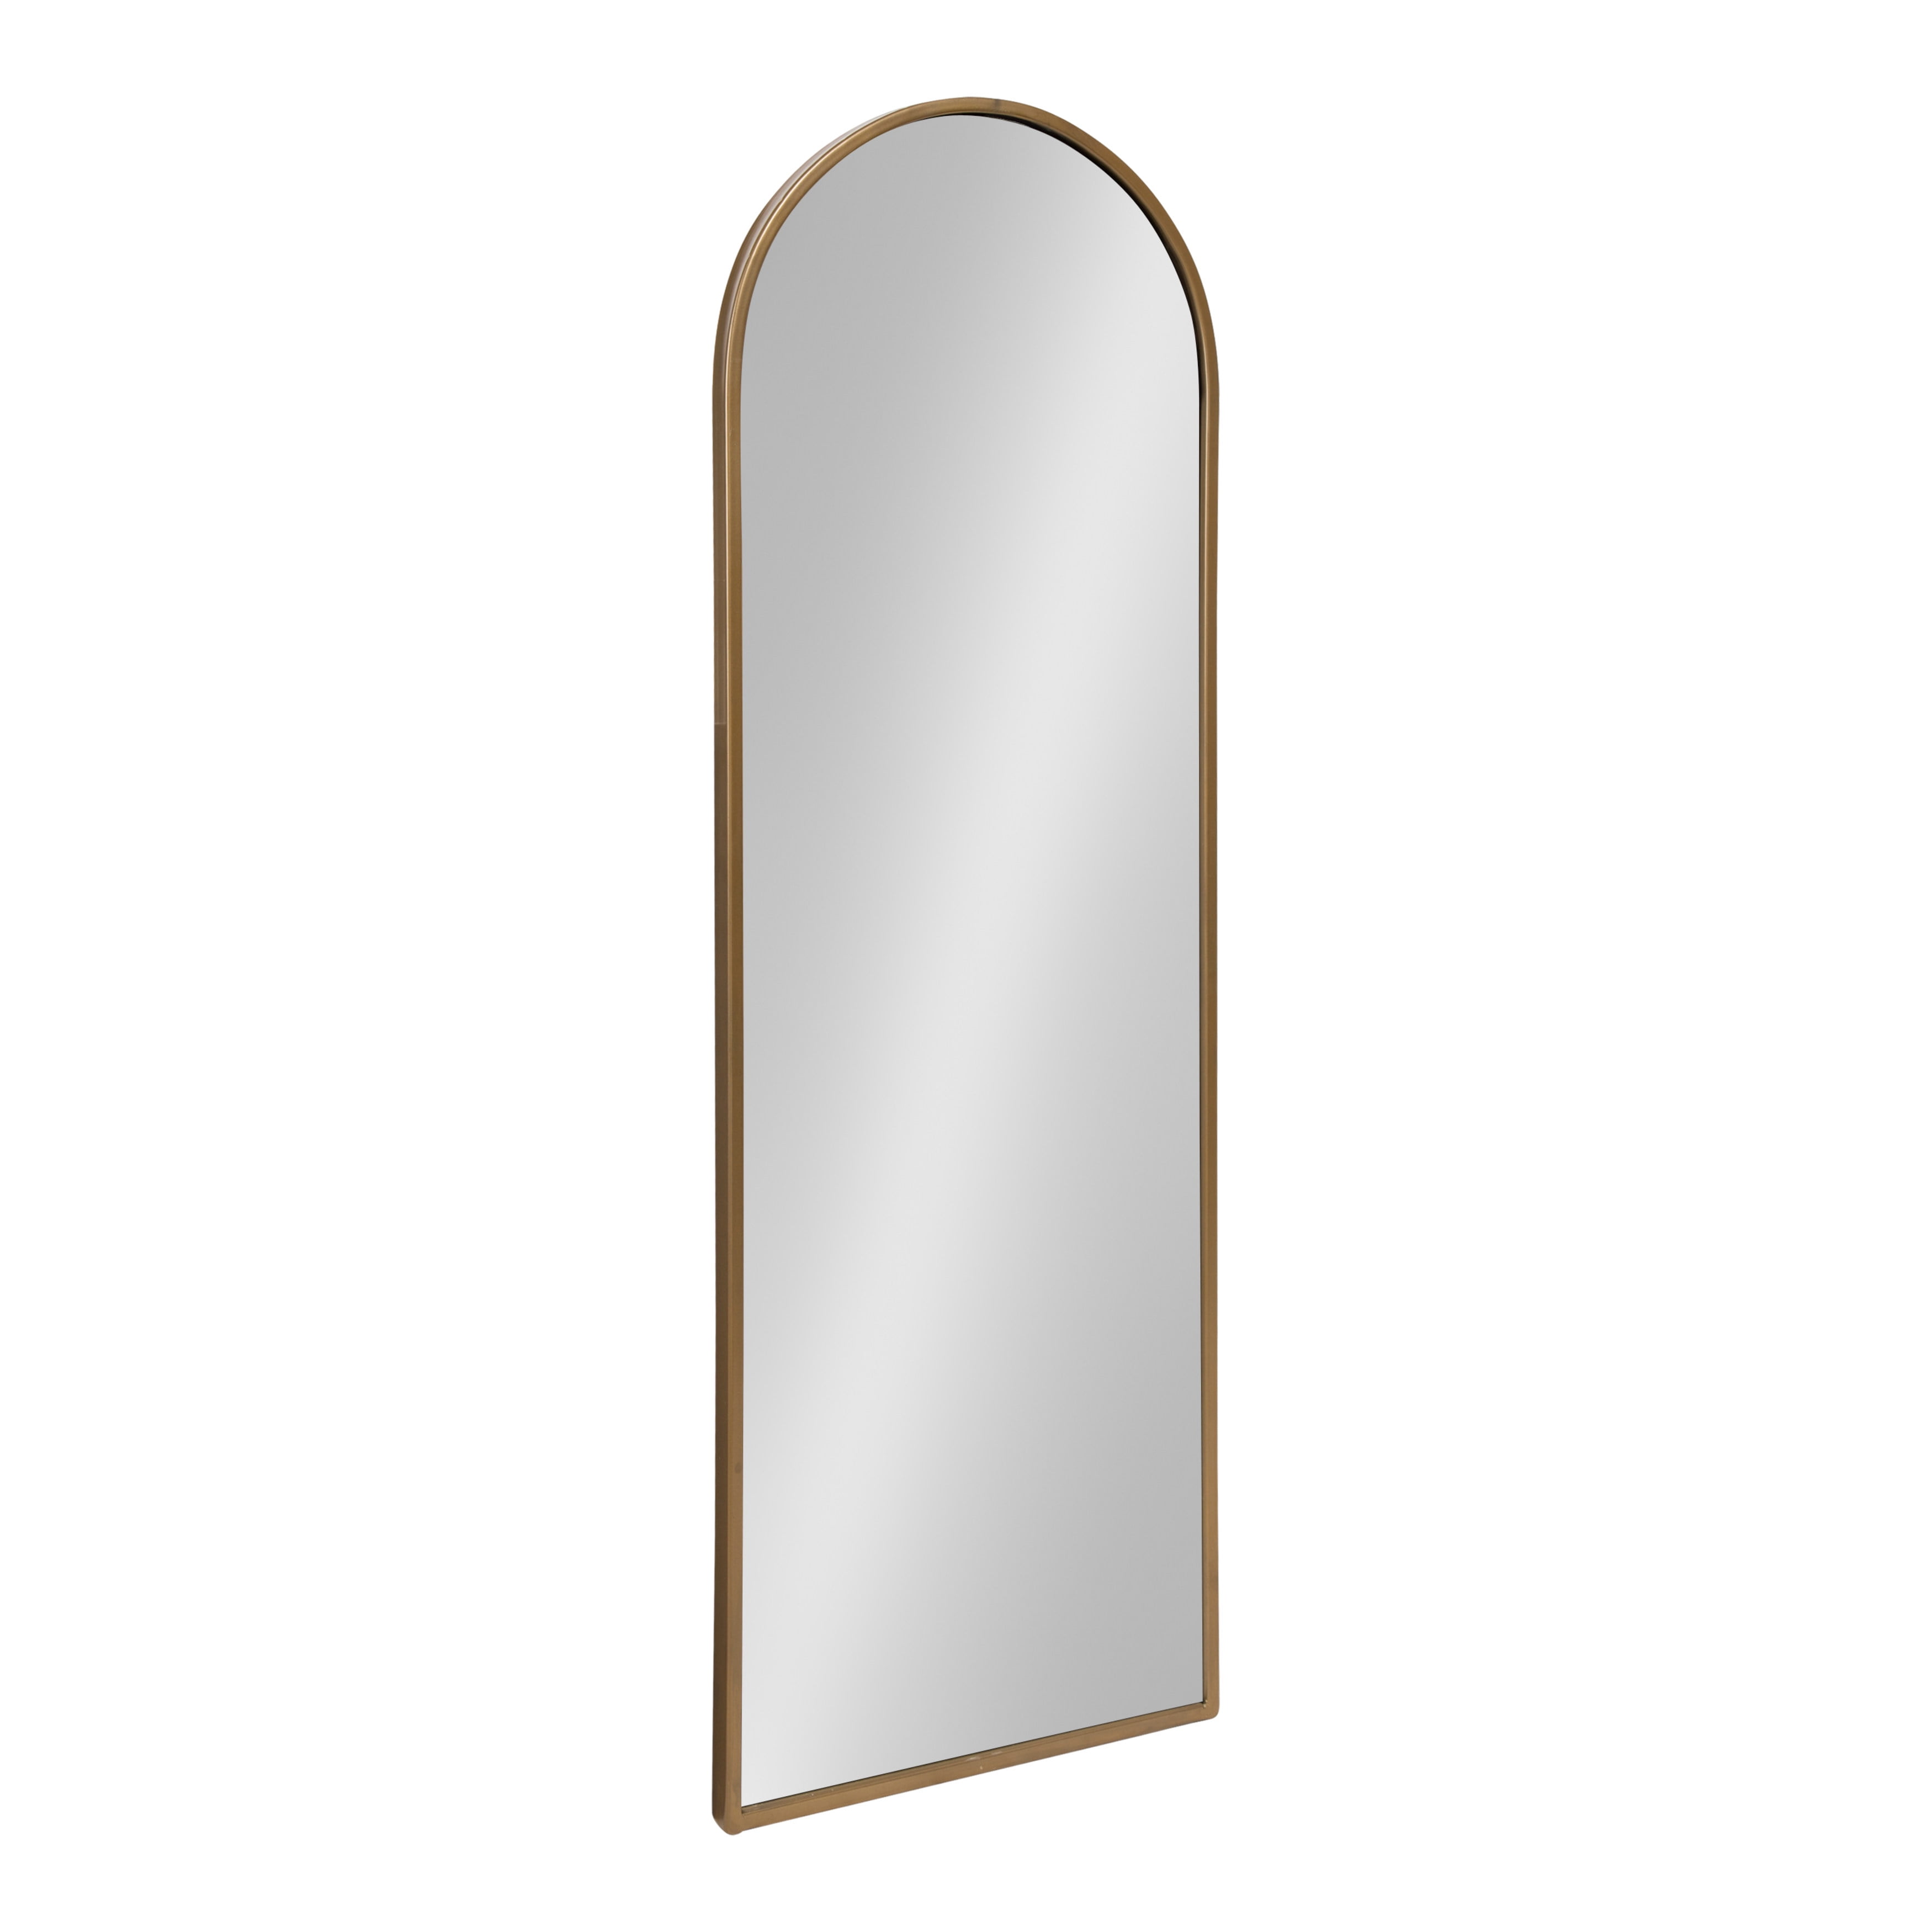 Купить зеркало настенное недорого. 17-6604gold зеркало диам.80 см_s2. Зеркало “Gold Mirror” 60х80 см. Зеркало арка. Арочное зеркало напольное.